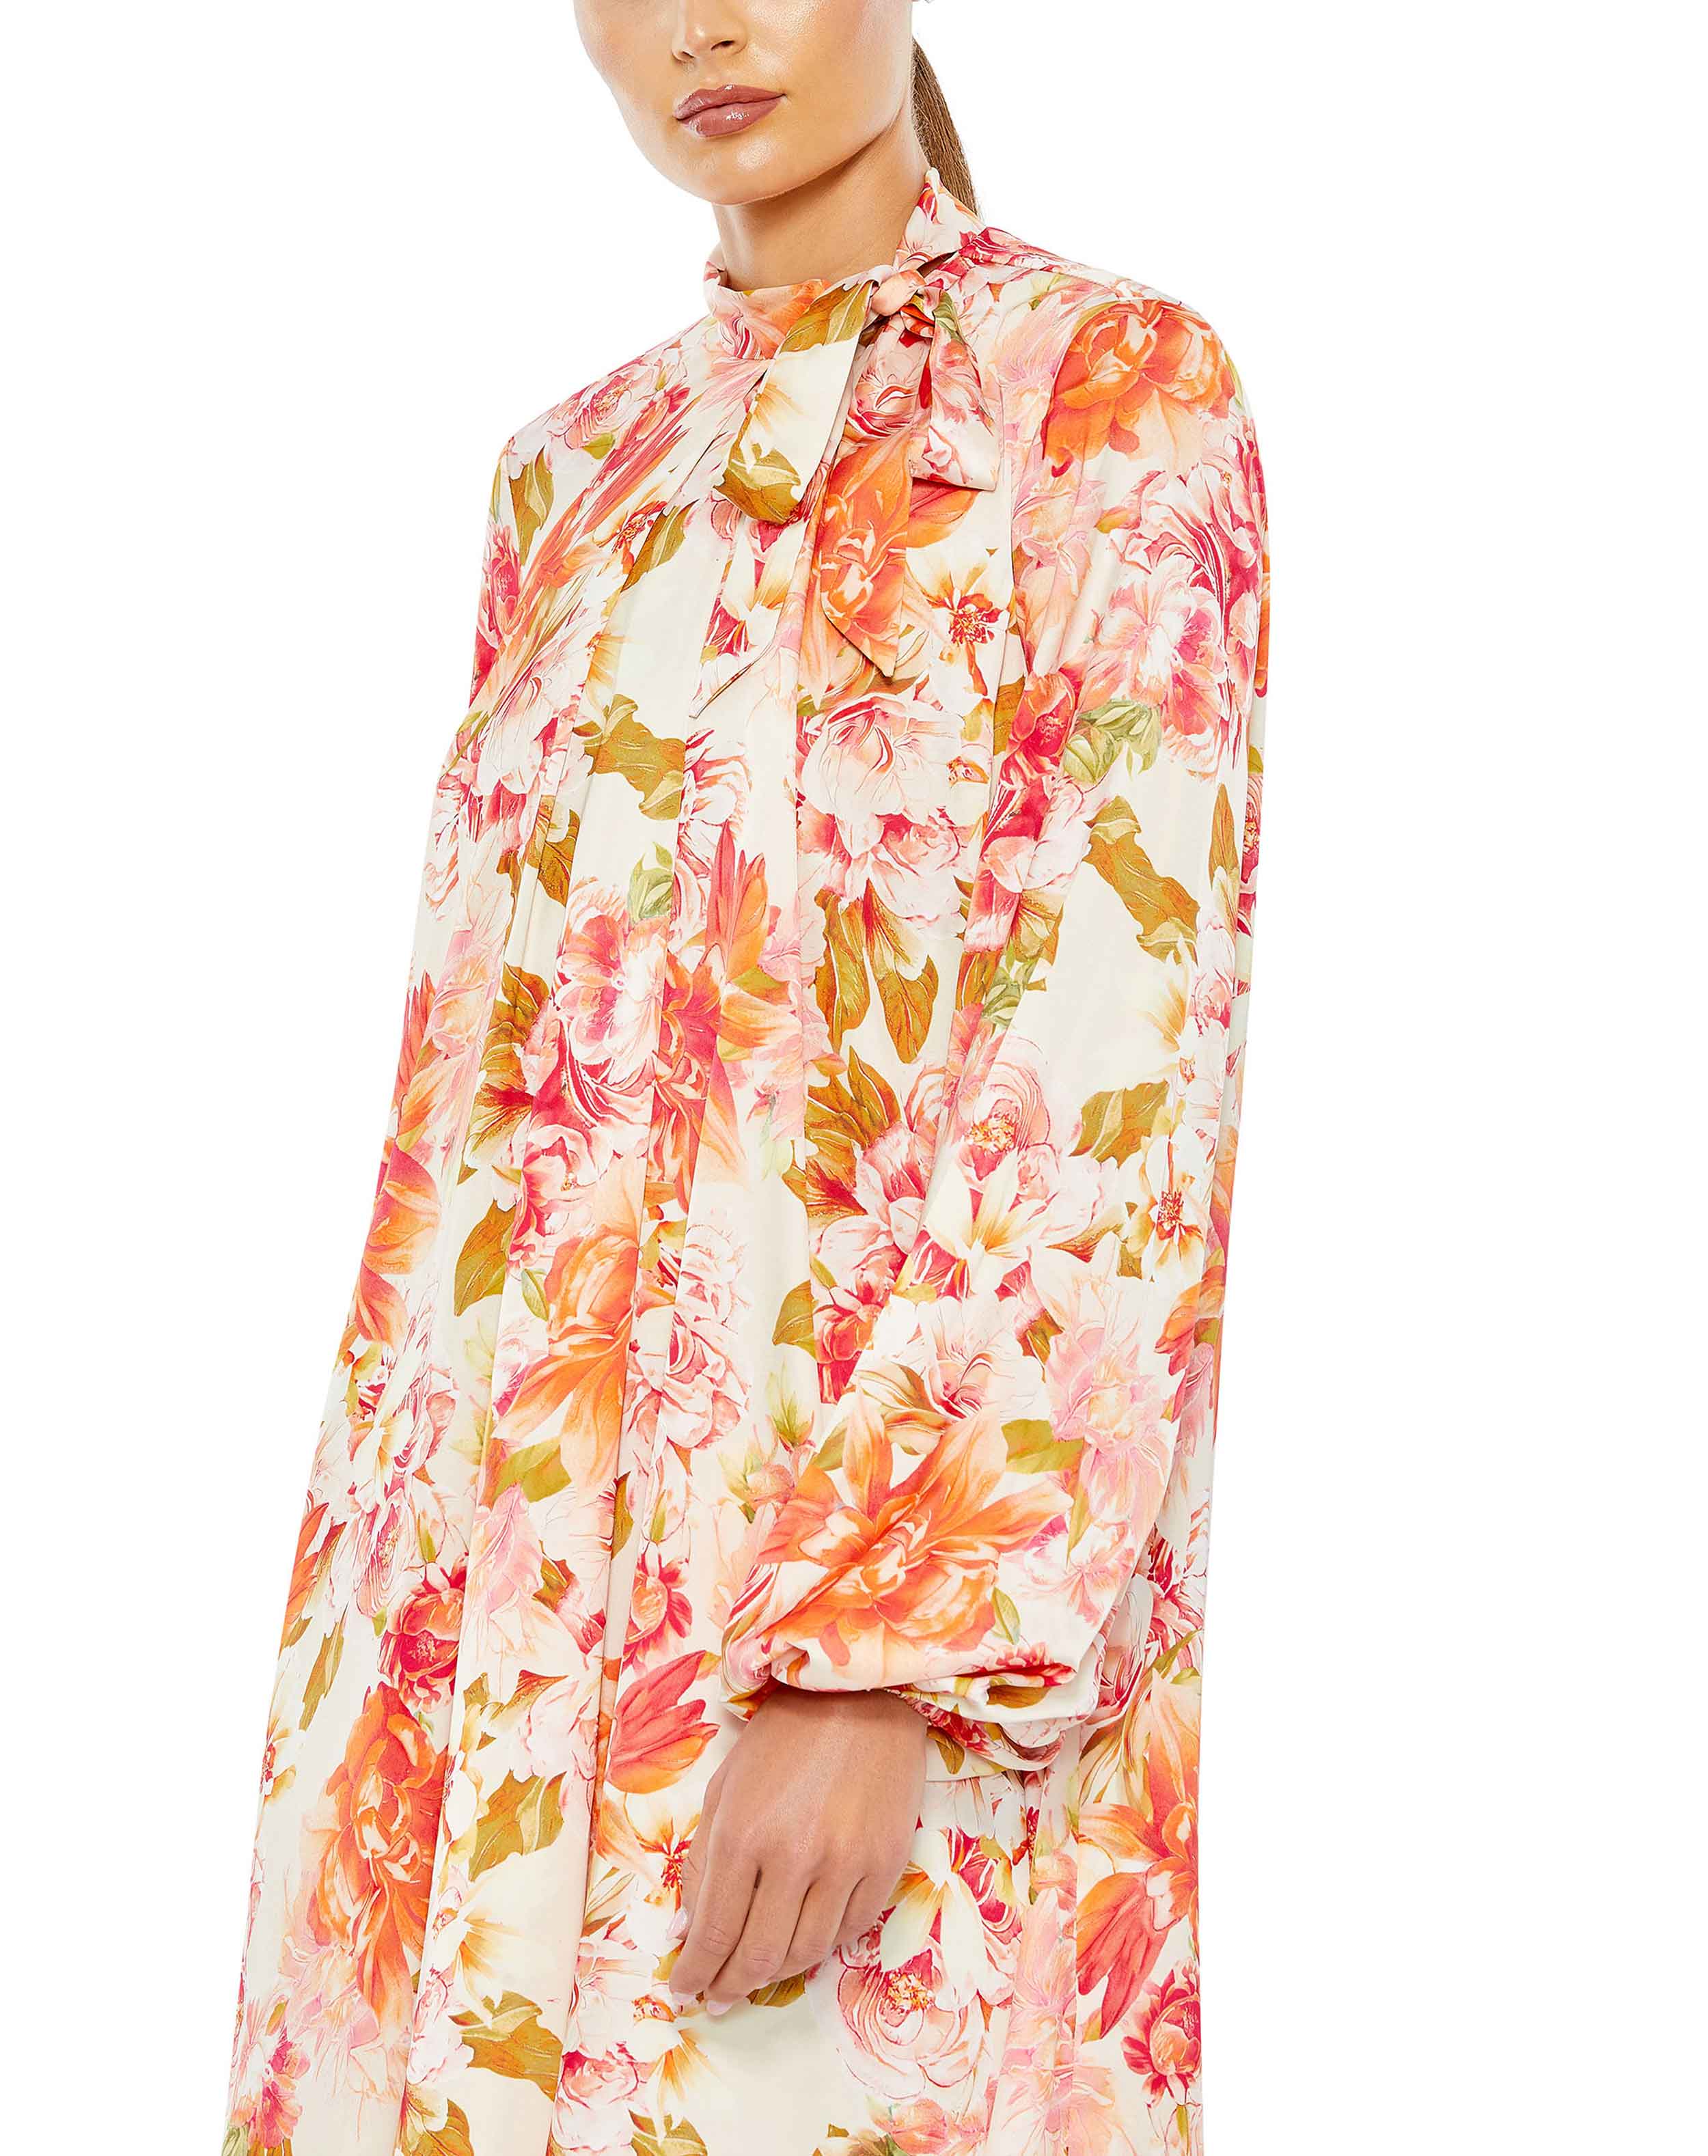 Mini-robe fluide à imprimé floral, col haut, manches bouffantes et cravate